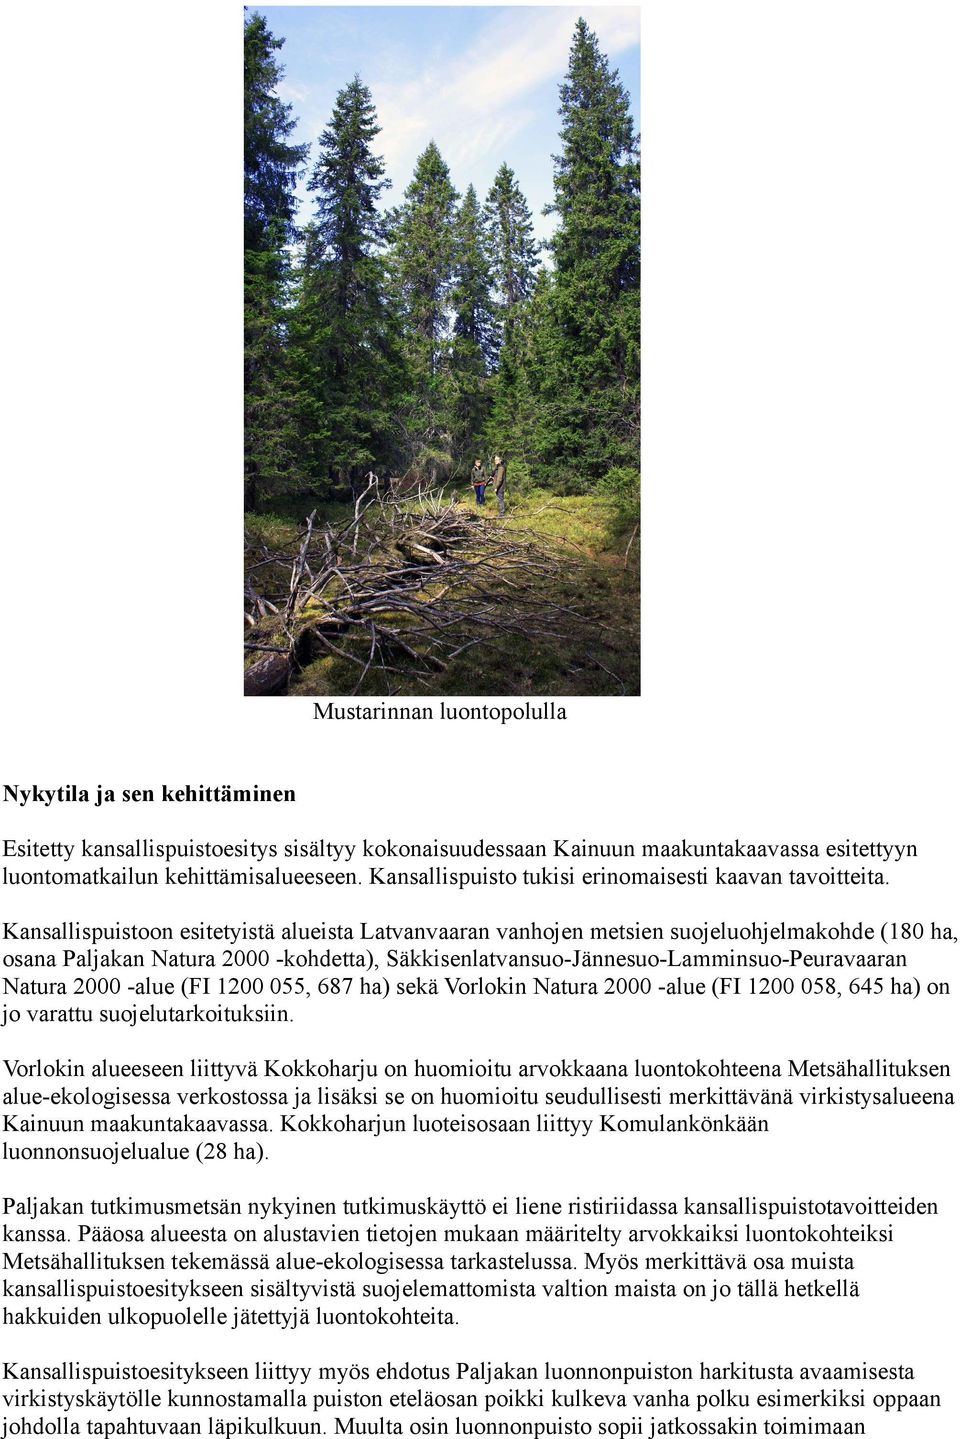 Kansallispuistoon esitetyistä alueista Latvanvaaran vanhojen metsien suojeluohjelmakohde (180 ha, osana Paljakan Natura 2000 -kohdetta), Säkkisenlatvansuo-Jännesuo-Lamminsuo-Peuravaaran Natura 2000